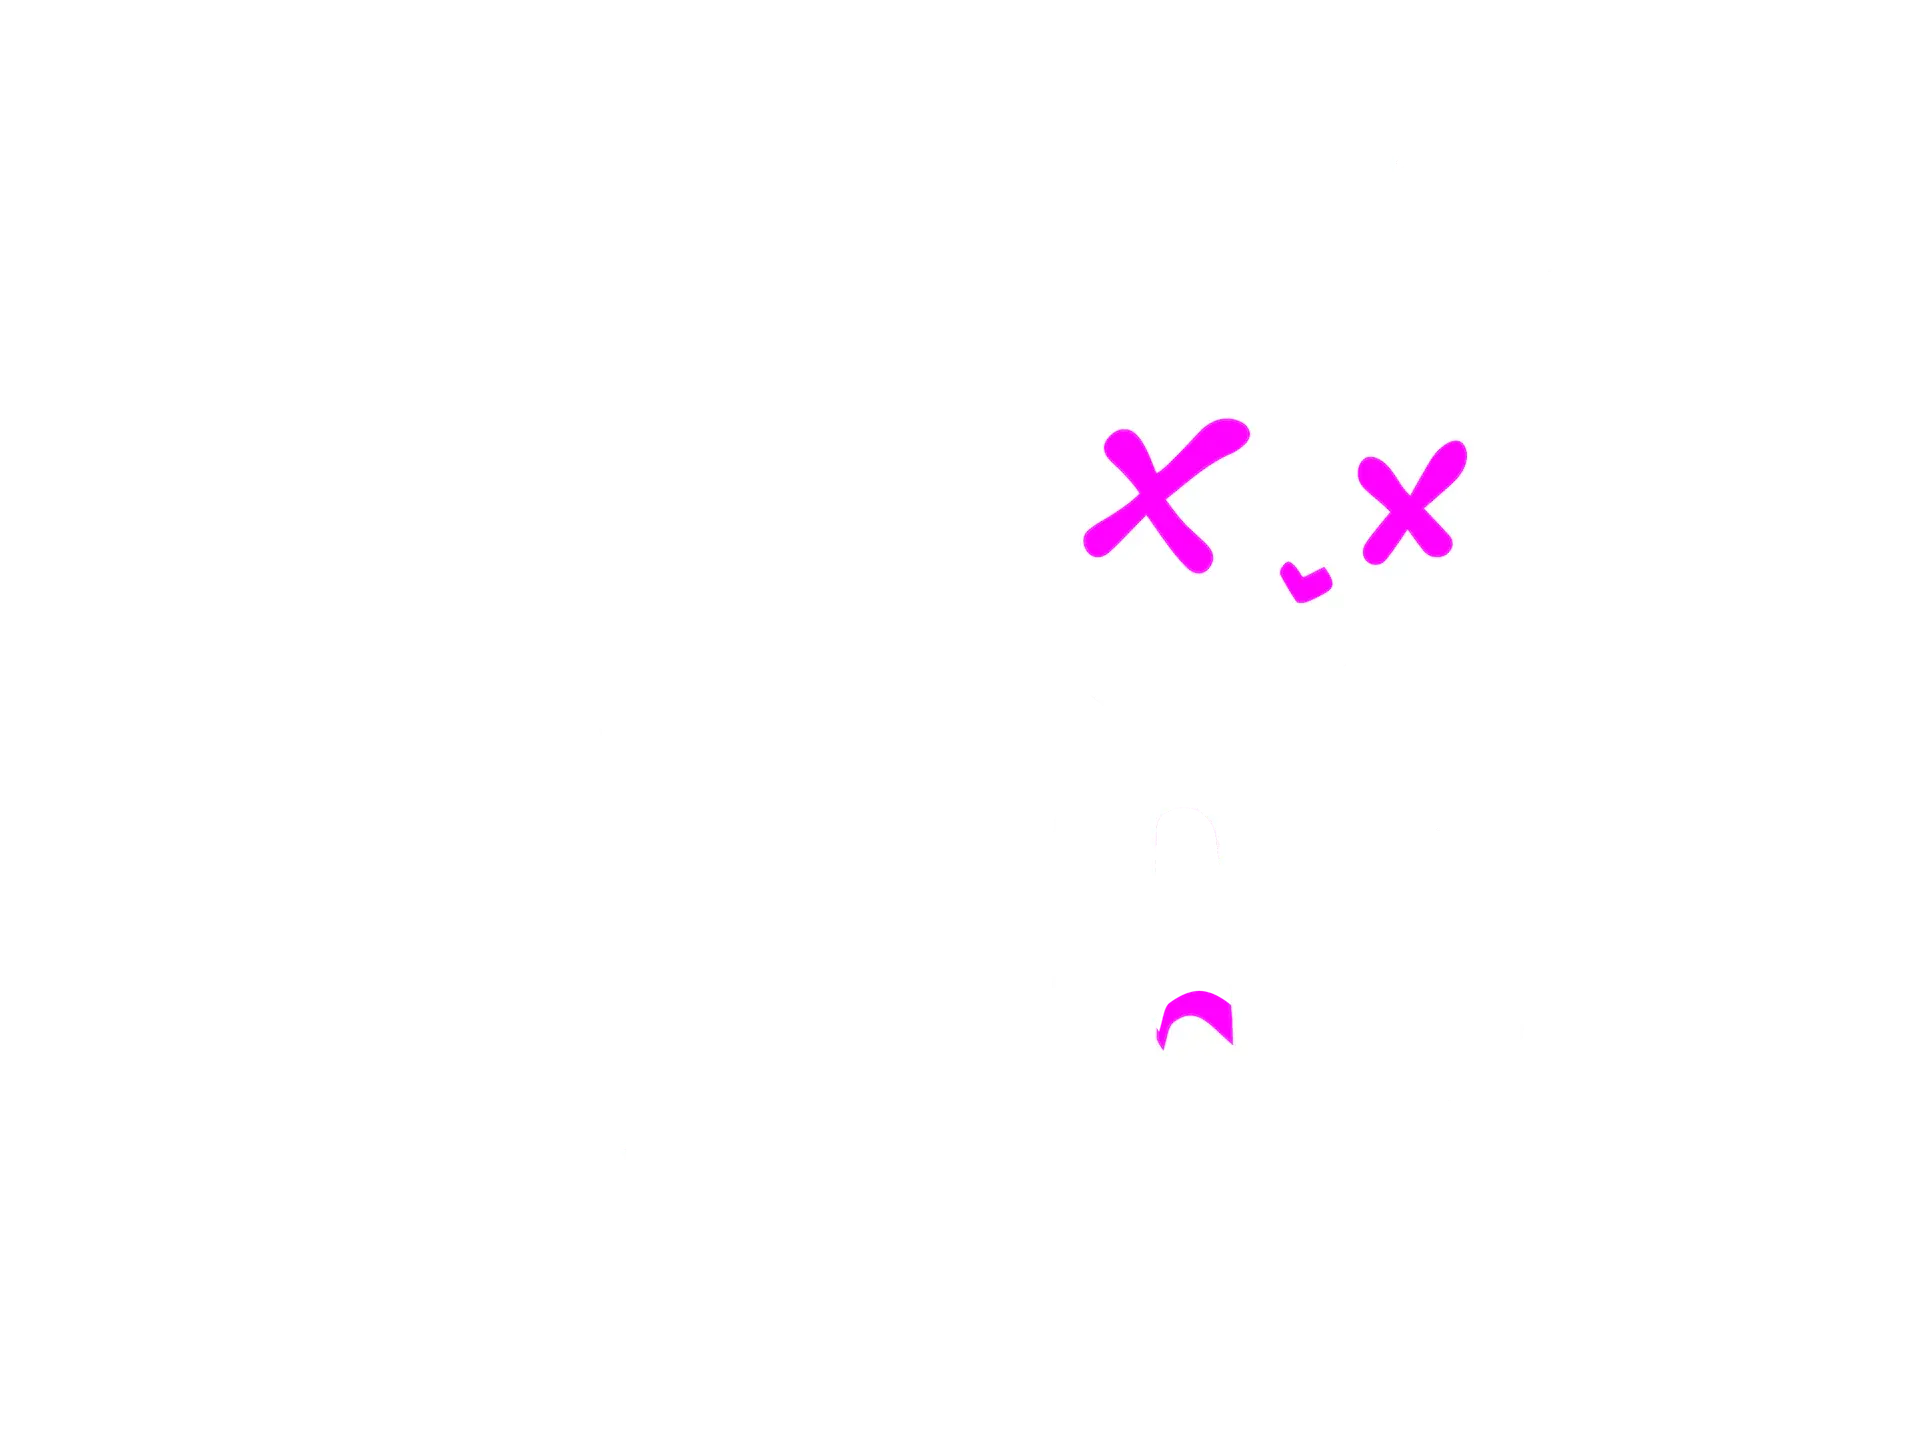 Ponchiqs